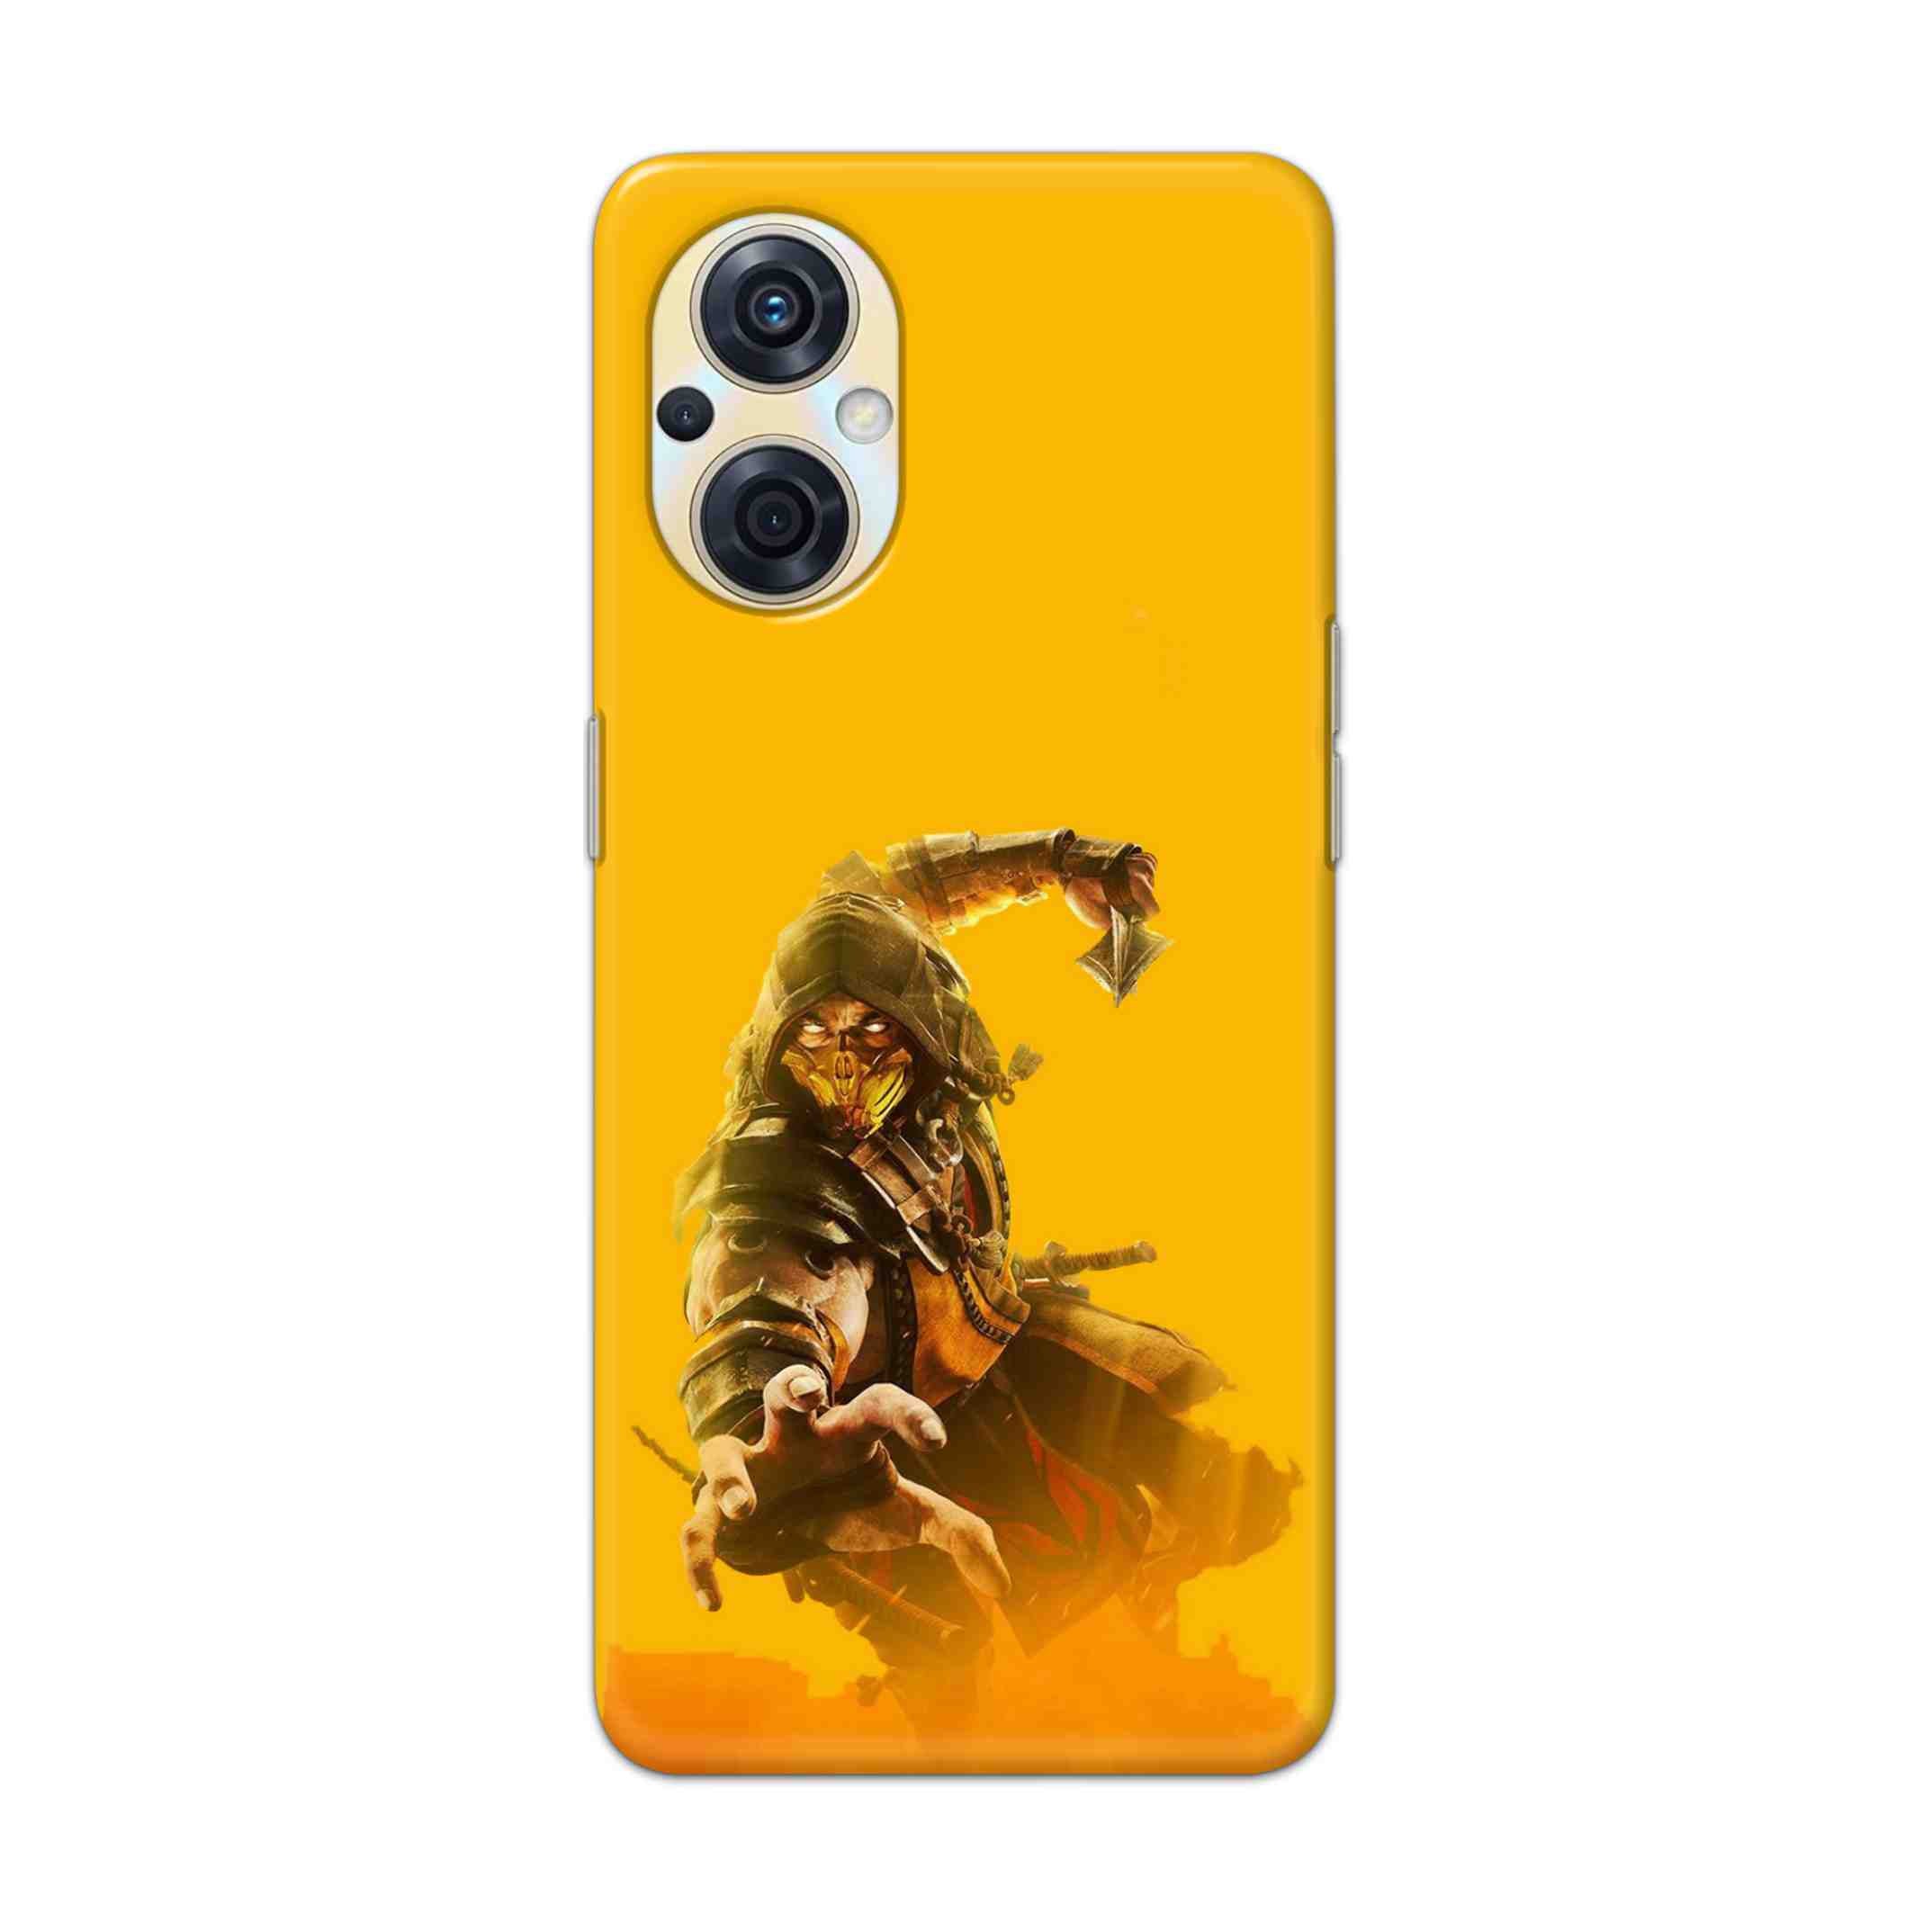 Buy Mortal Kombat Hard Back Mobile Phone Case Cover For Oppo F21s Pro 5G Online